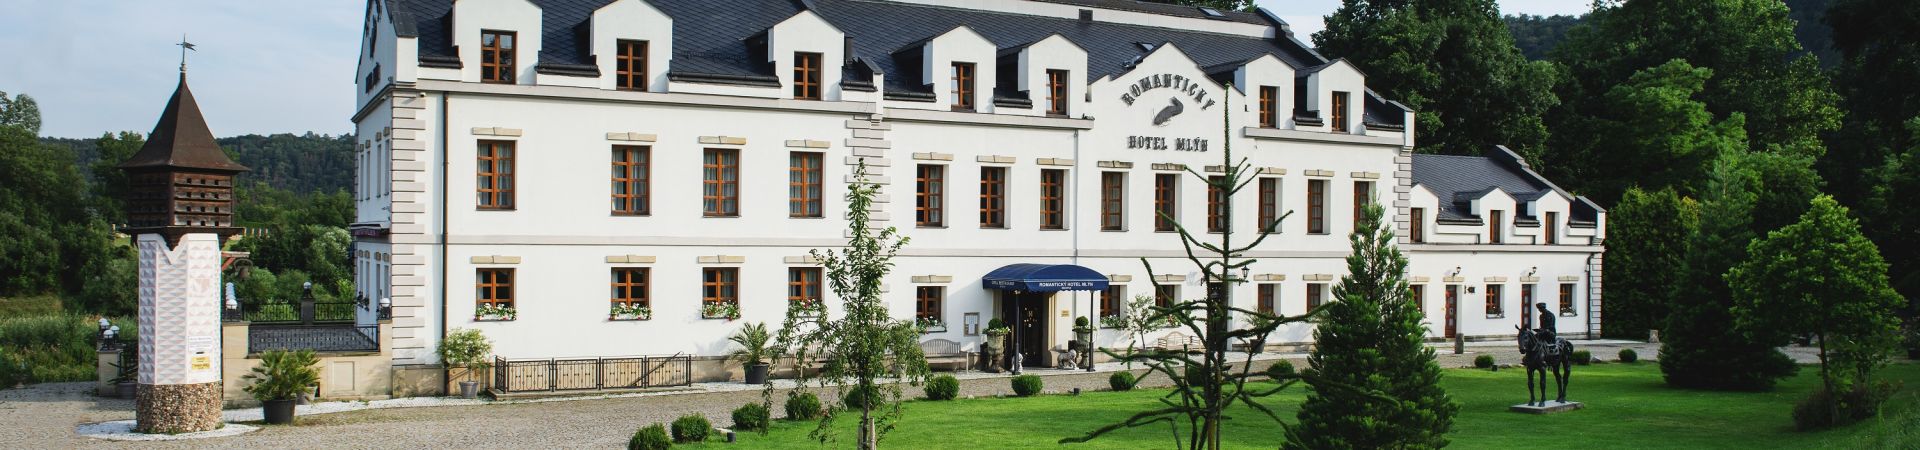 Romantický Hotel Mlýn Karlštejn